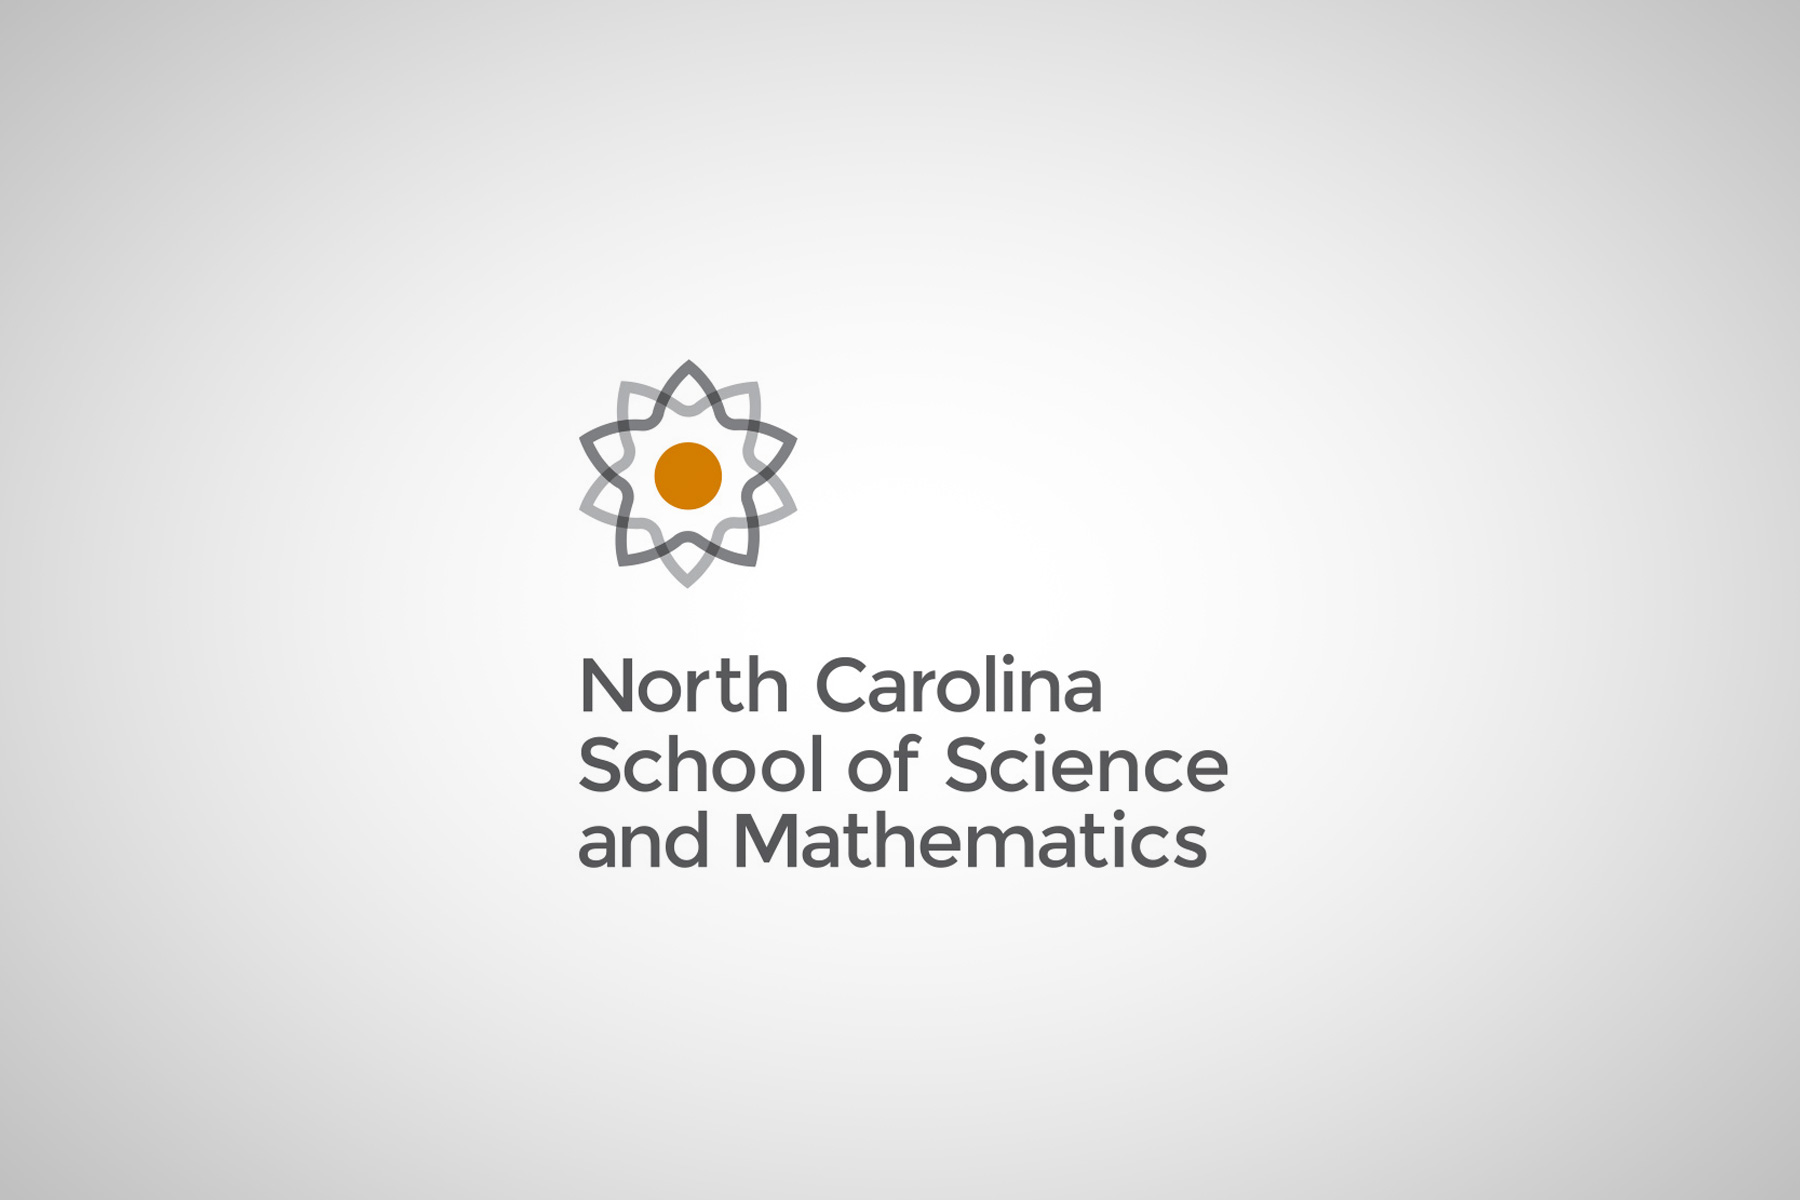 NCSSM Logo